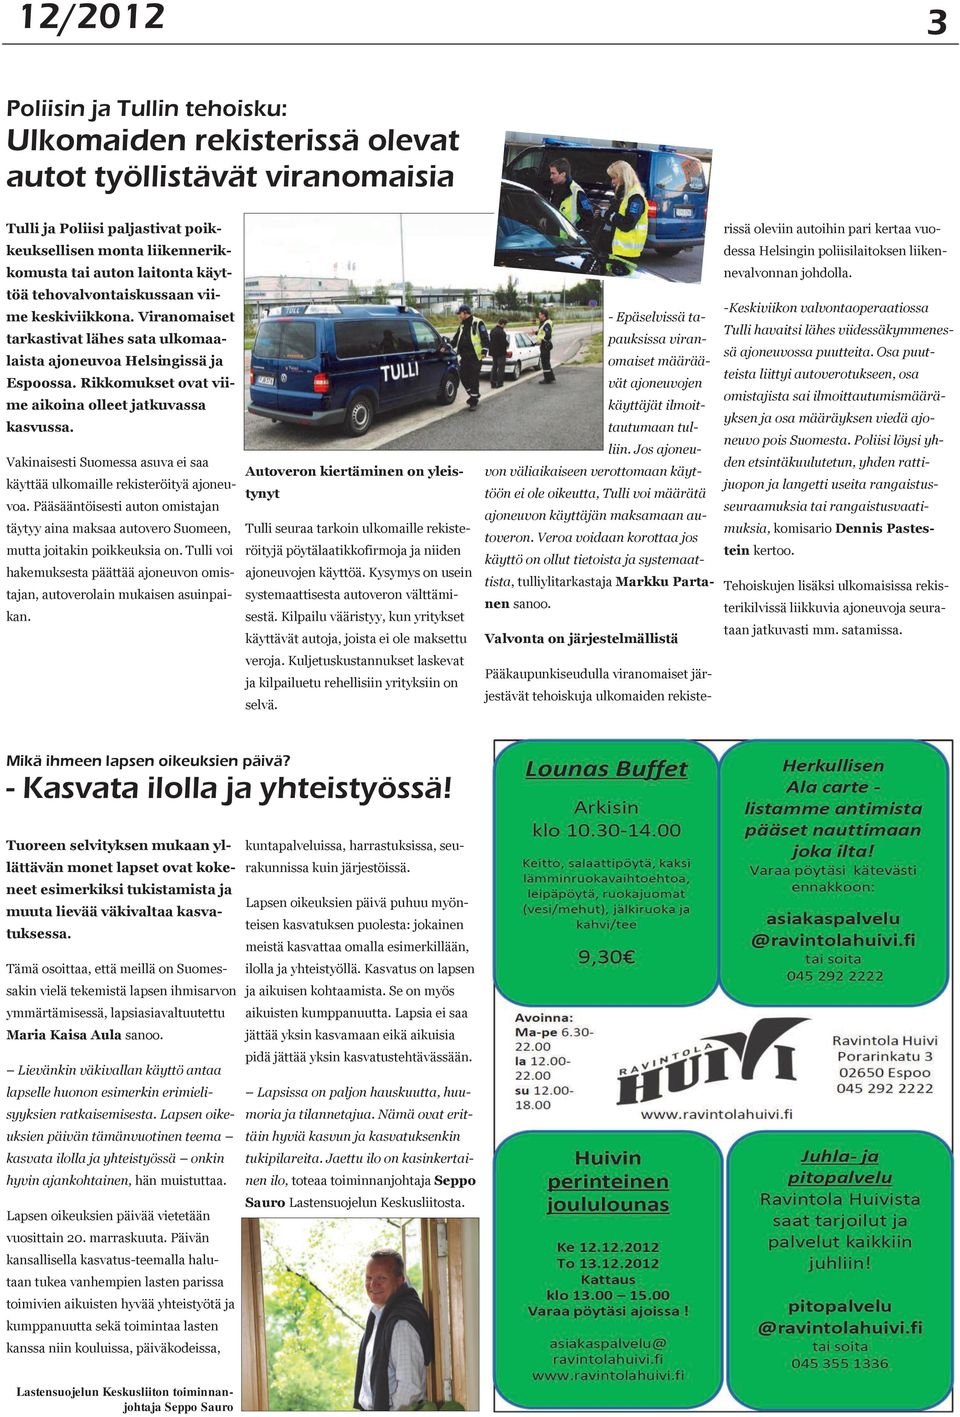 Viranomaiset tarkastivat lähes sata ulkomaalaista ajoneuvoa Helsingissä ja Espoossa. Rikkomukset ovat viime aikoina olleet jatkuvassa kasvussa.